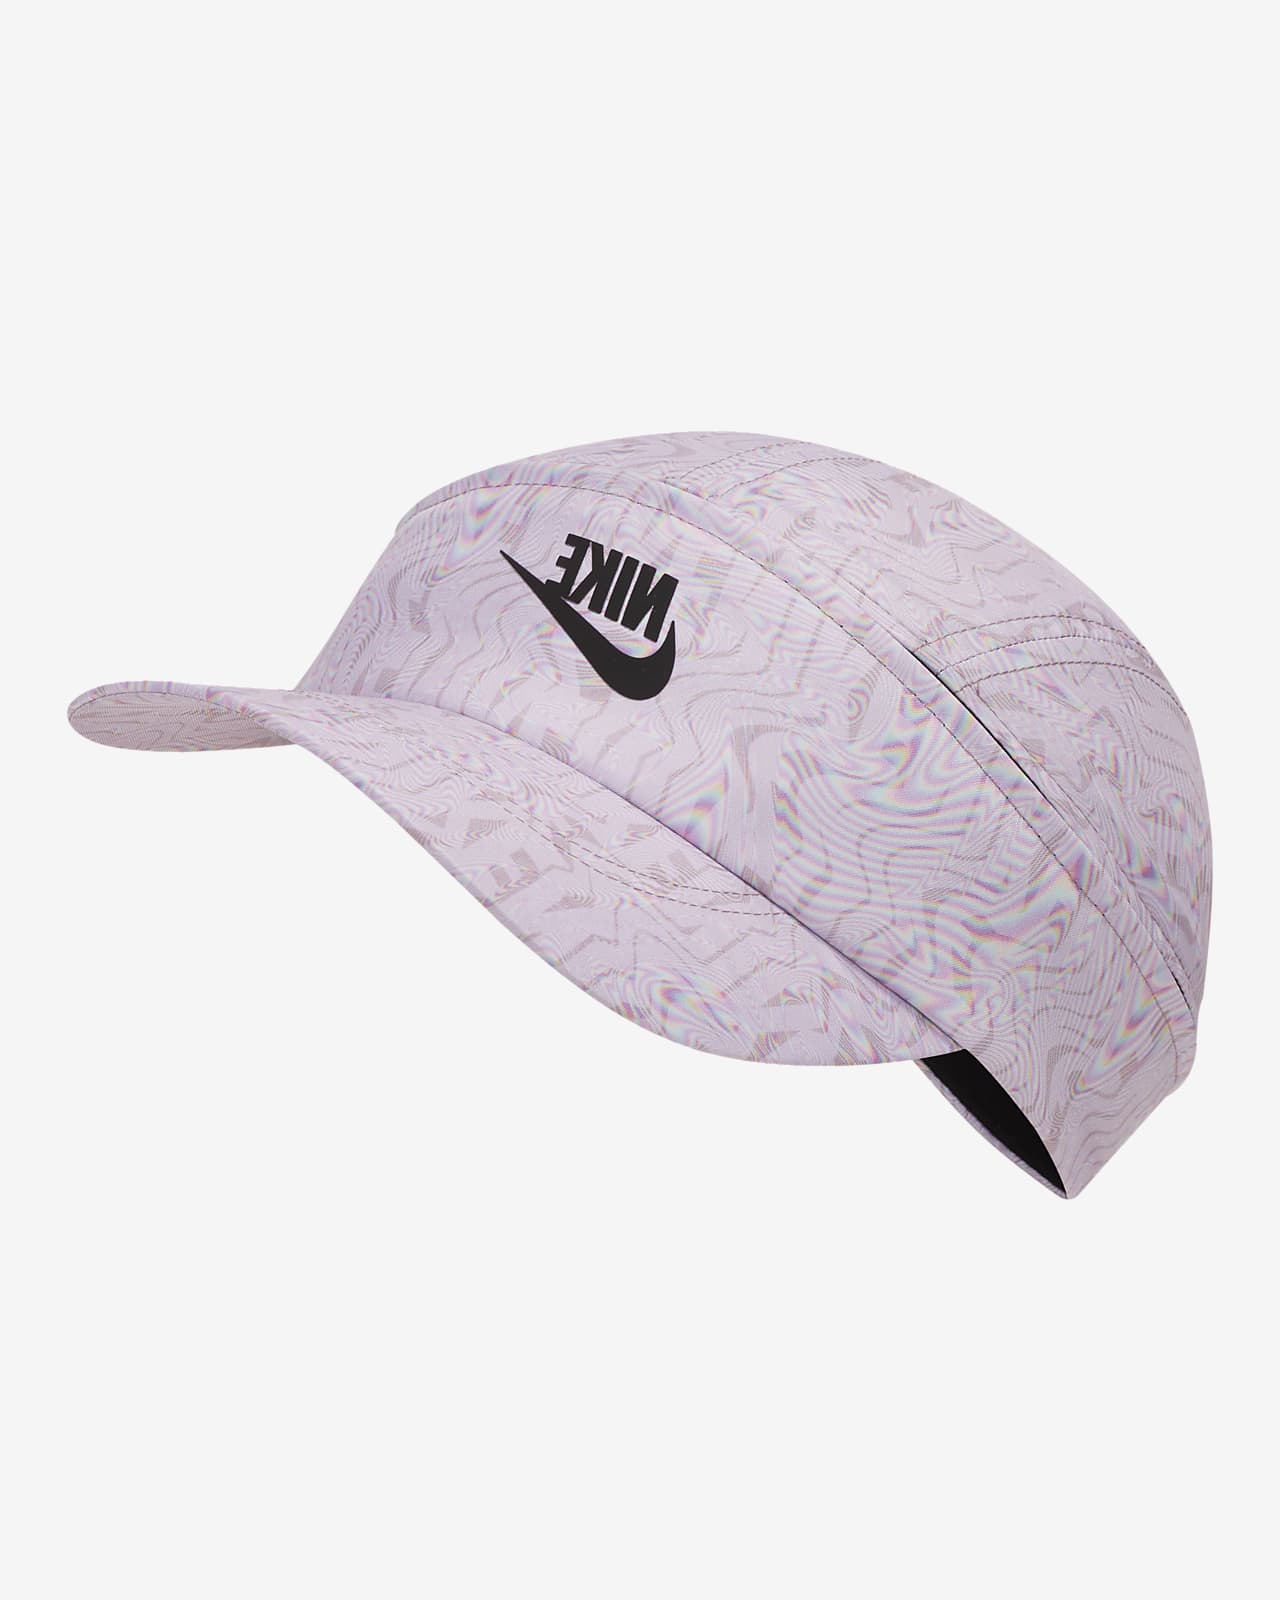 Nike Sportswear Tailwind Adjustable Cap 